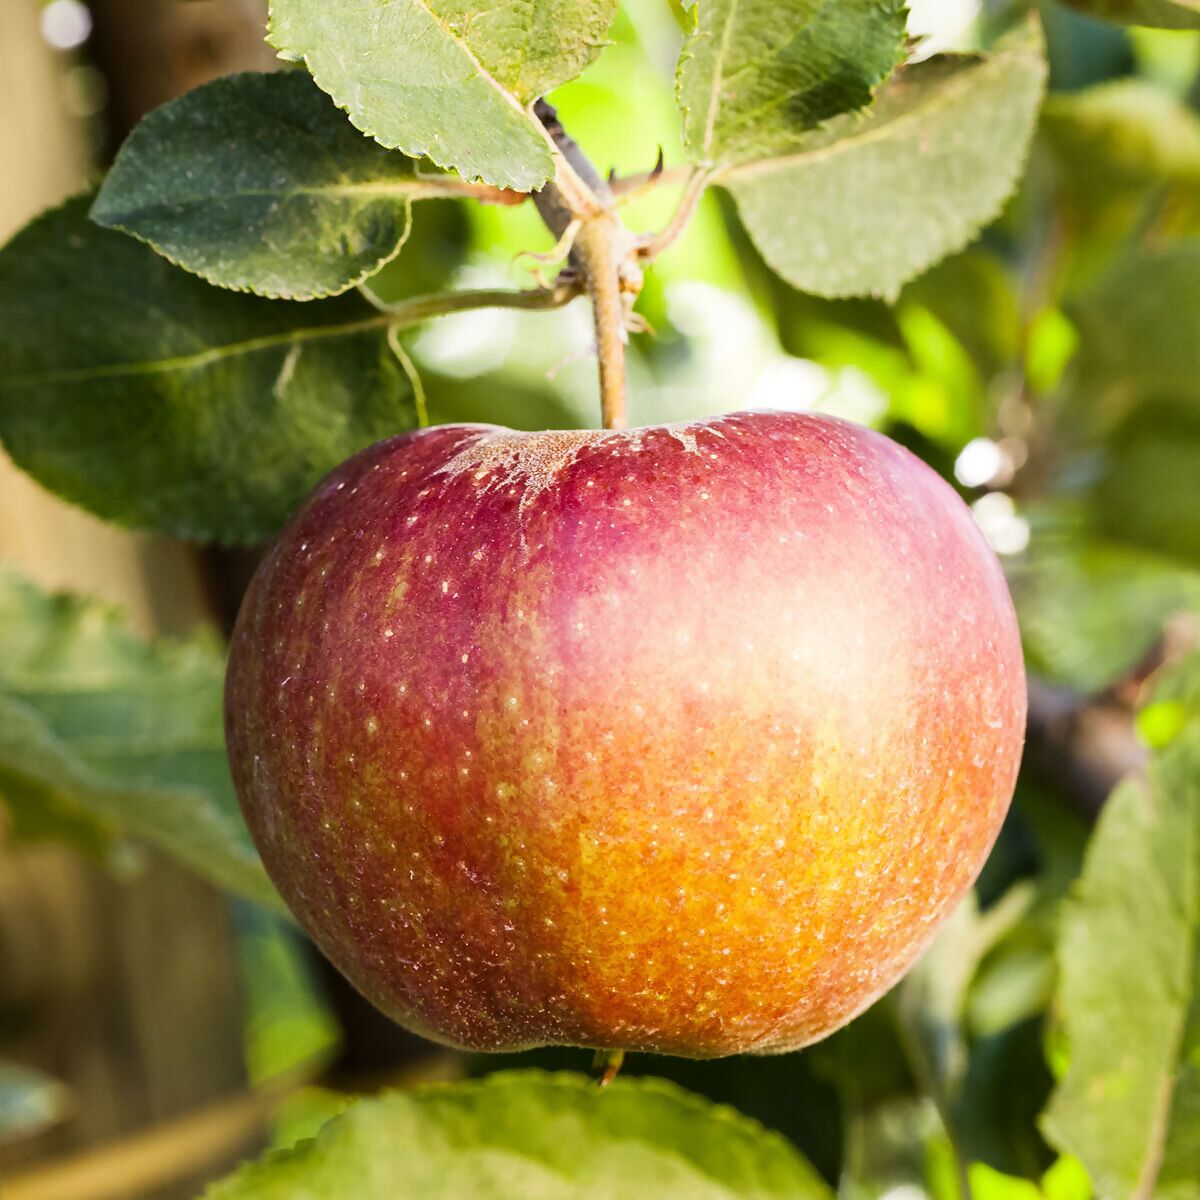 BIO Apfel James Grieve online kaufen bei Gärtner Pötschke | Obstbäume & Gemüsepflanzen